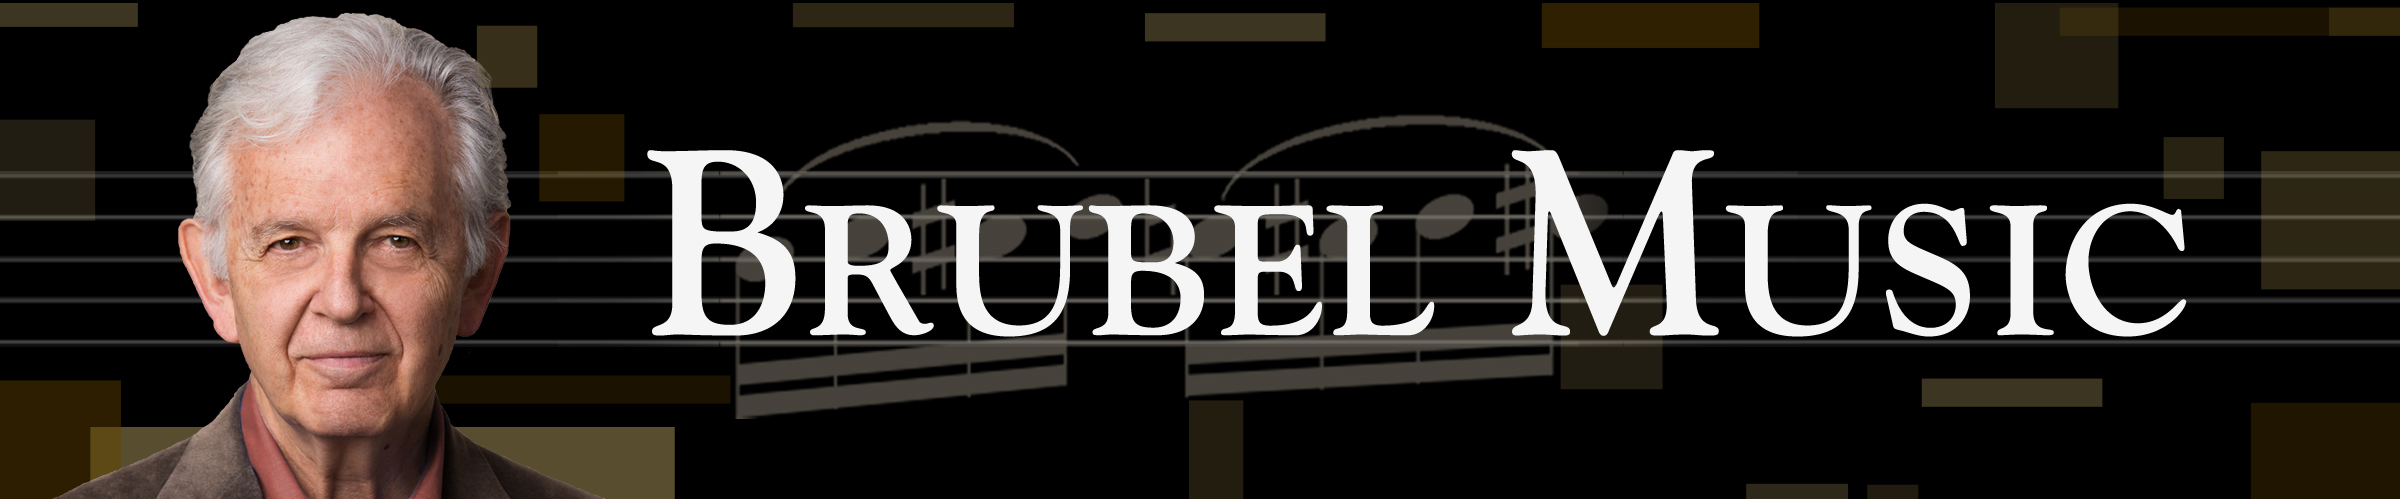 Brubel Music - 